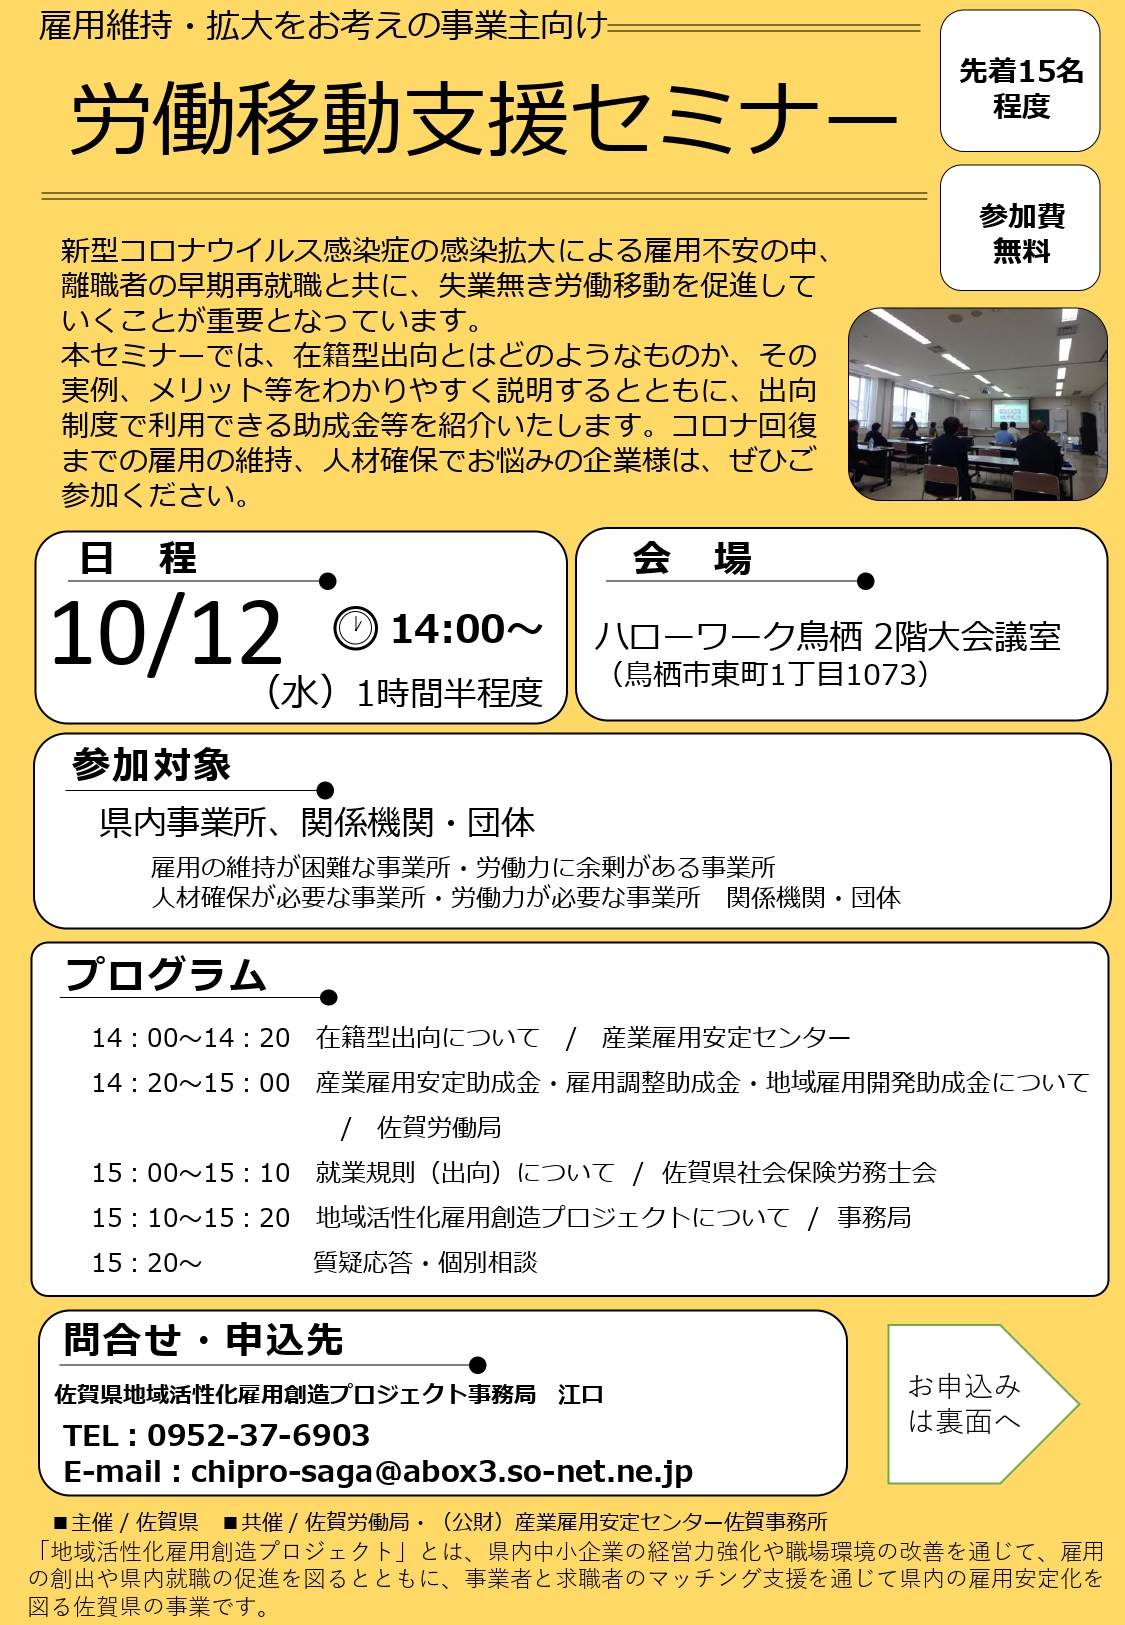 【10月12日】「労働移動支援セミナー」の開催について